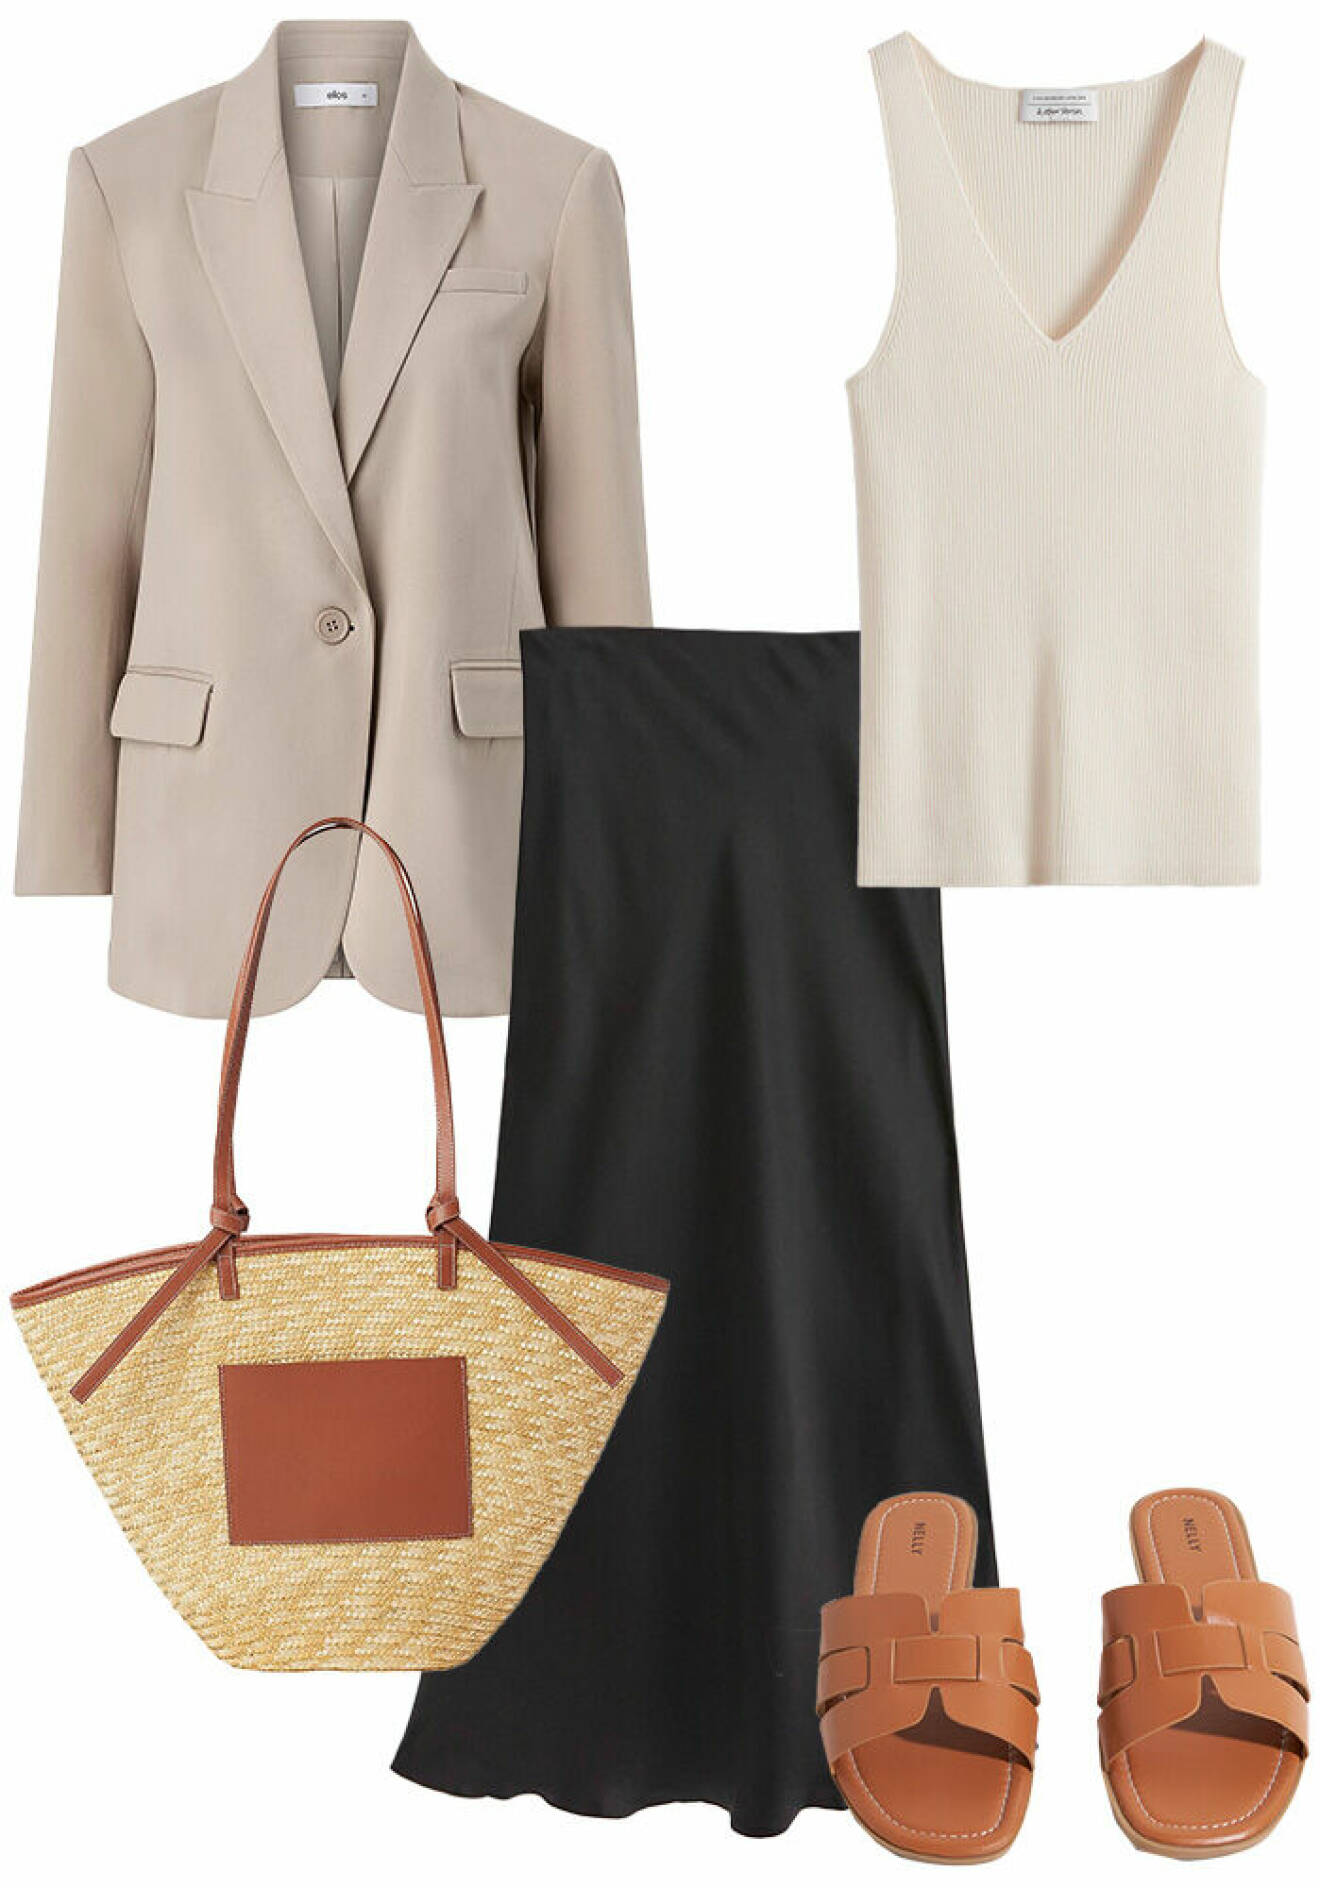 Outfit till jobbet och kontoret med kavaj, satinkjol, ribbat linne, stråväska och bruna sandaler